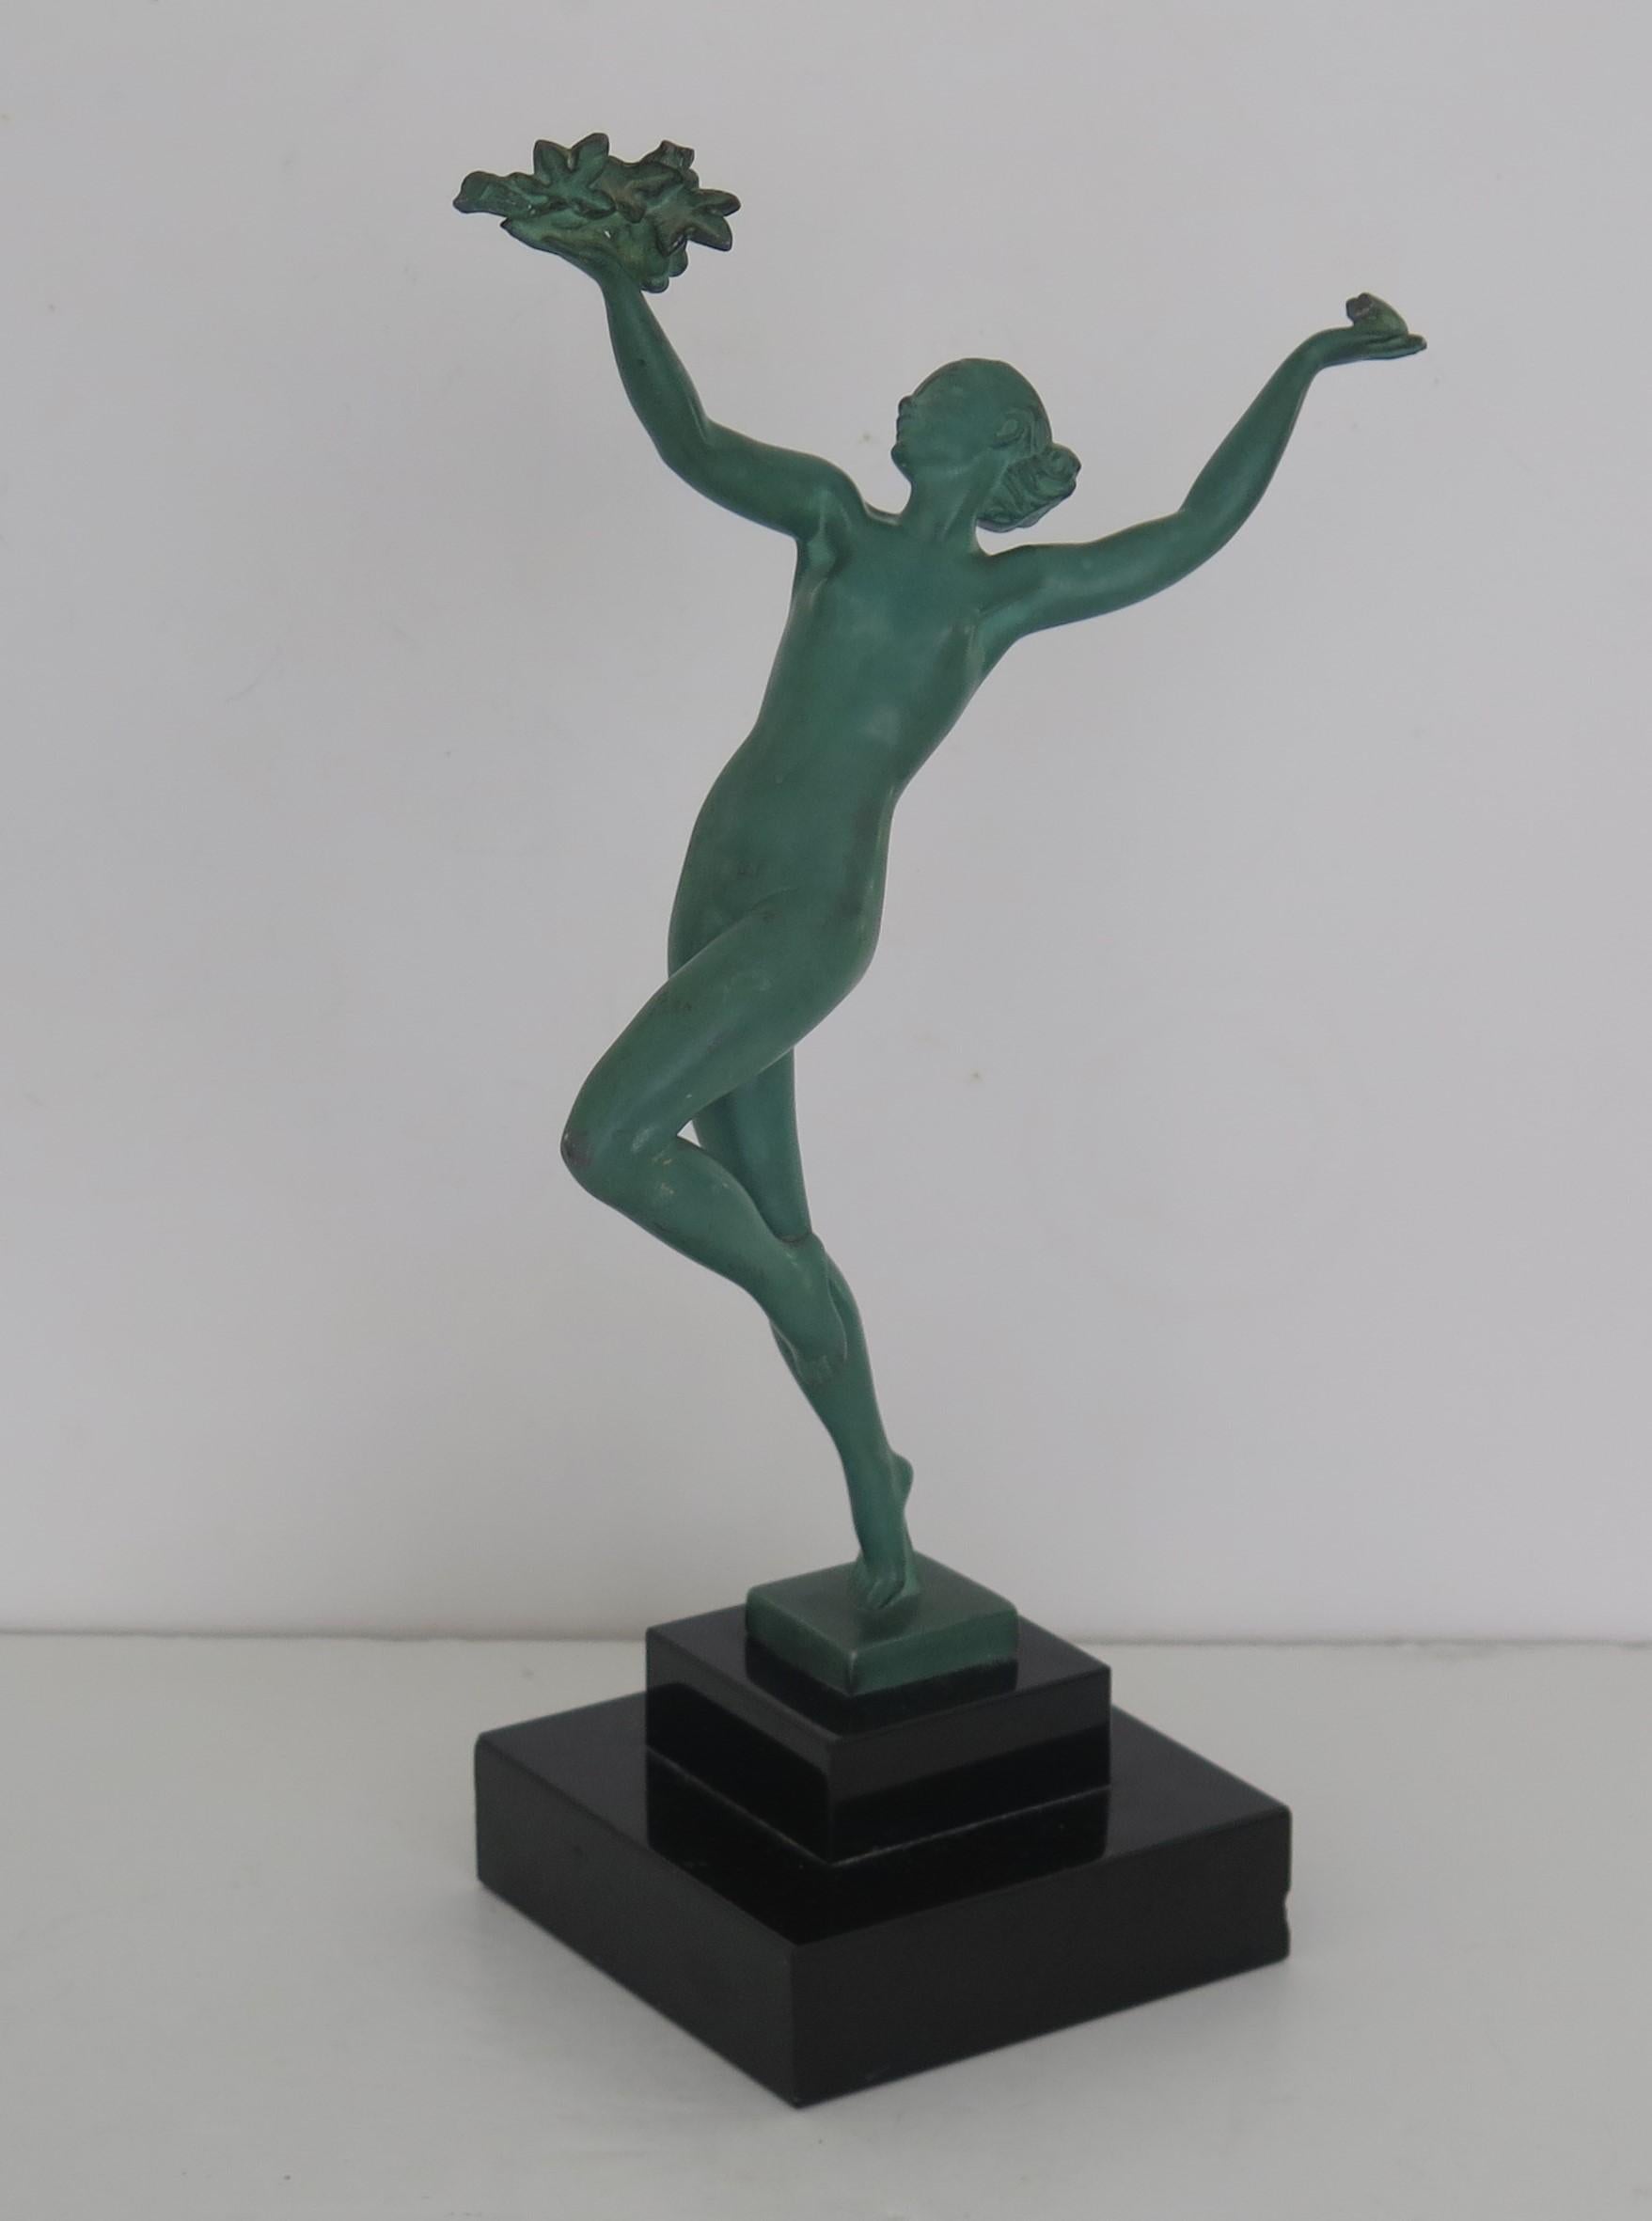 Il s'agit d'une figurine originale en métal d'une danseuse par Max Le Verrier / Pierre Le Faguays, appelée GRISERIE, et signée GUERBE, fabriquée en France dans la période Art Déco, circa 1930 .

La figurine est magnifiquement sculptée par Pierre